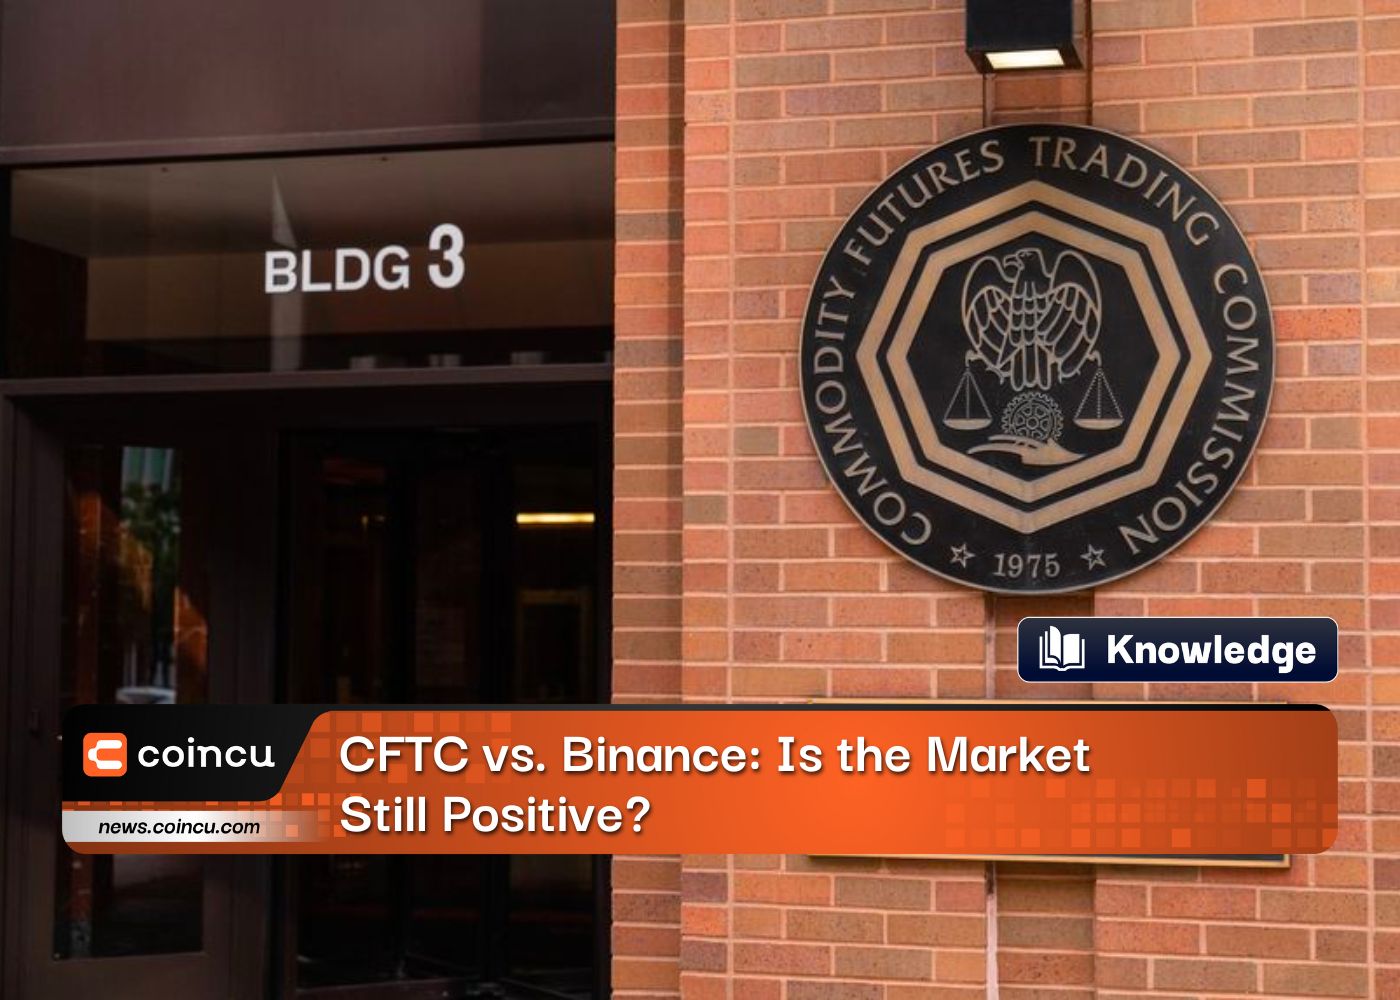 CFTC vs. Binance: Is the Market Still Positive?